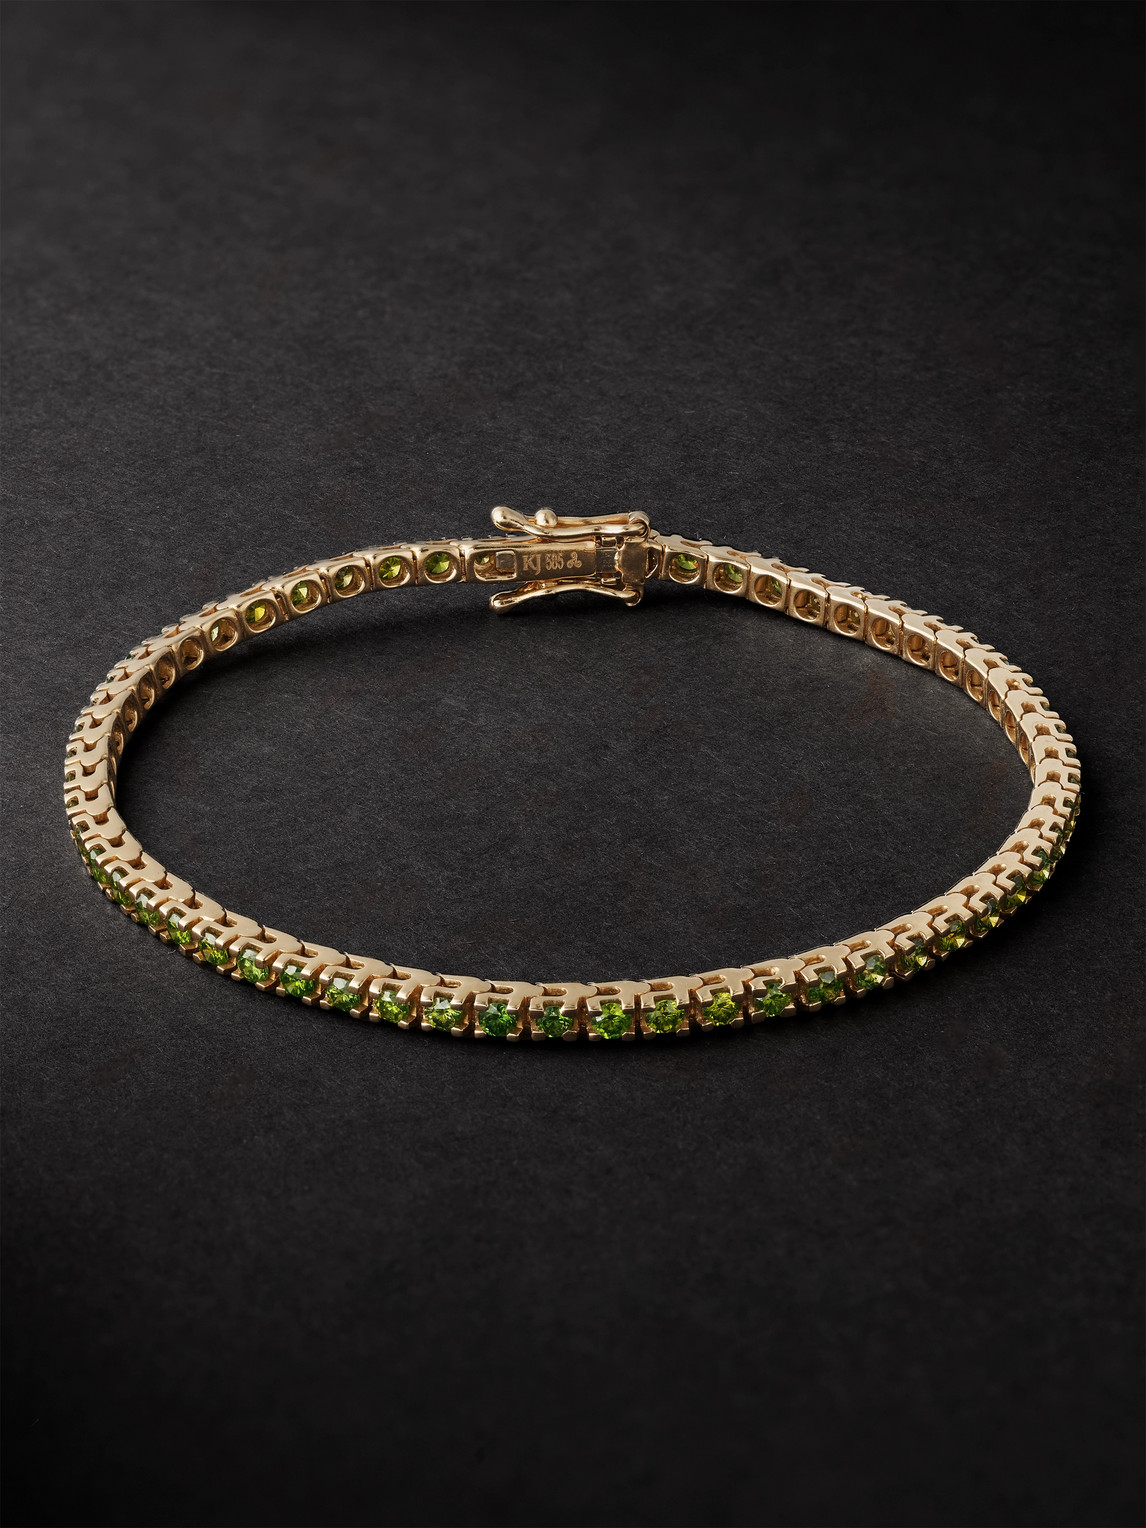 Kolours Jewelry Spectra Gold Diamond Tennis Bracelet In Green